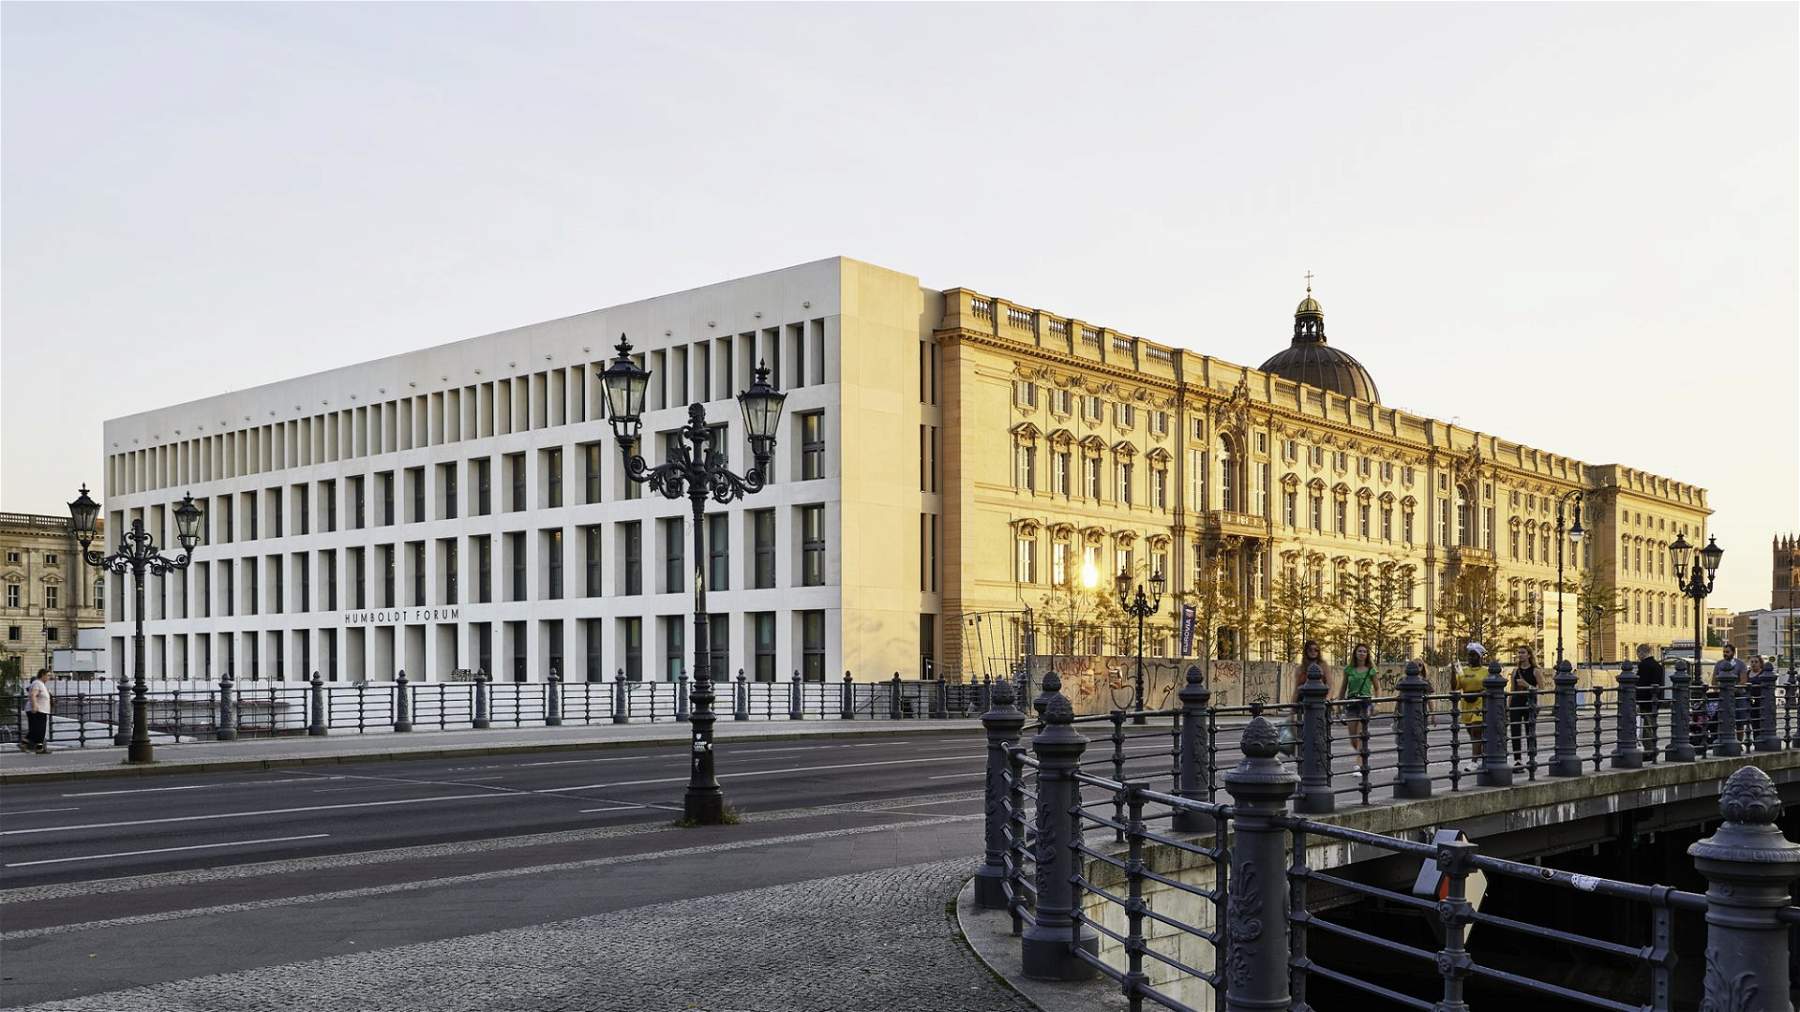 Un nouveau musée gigantesque ouvre ses portes à Berlin : le Humboldt Forum. C'est le 